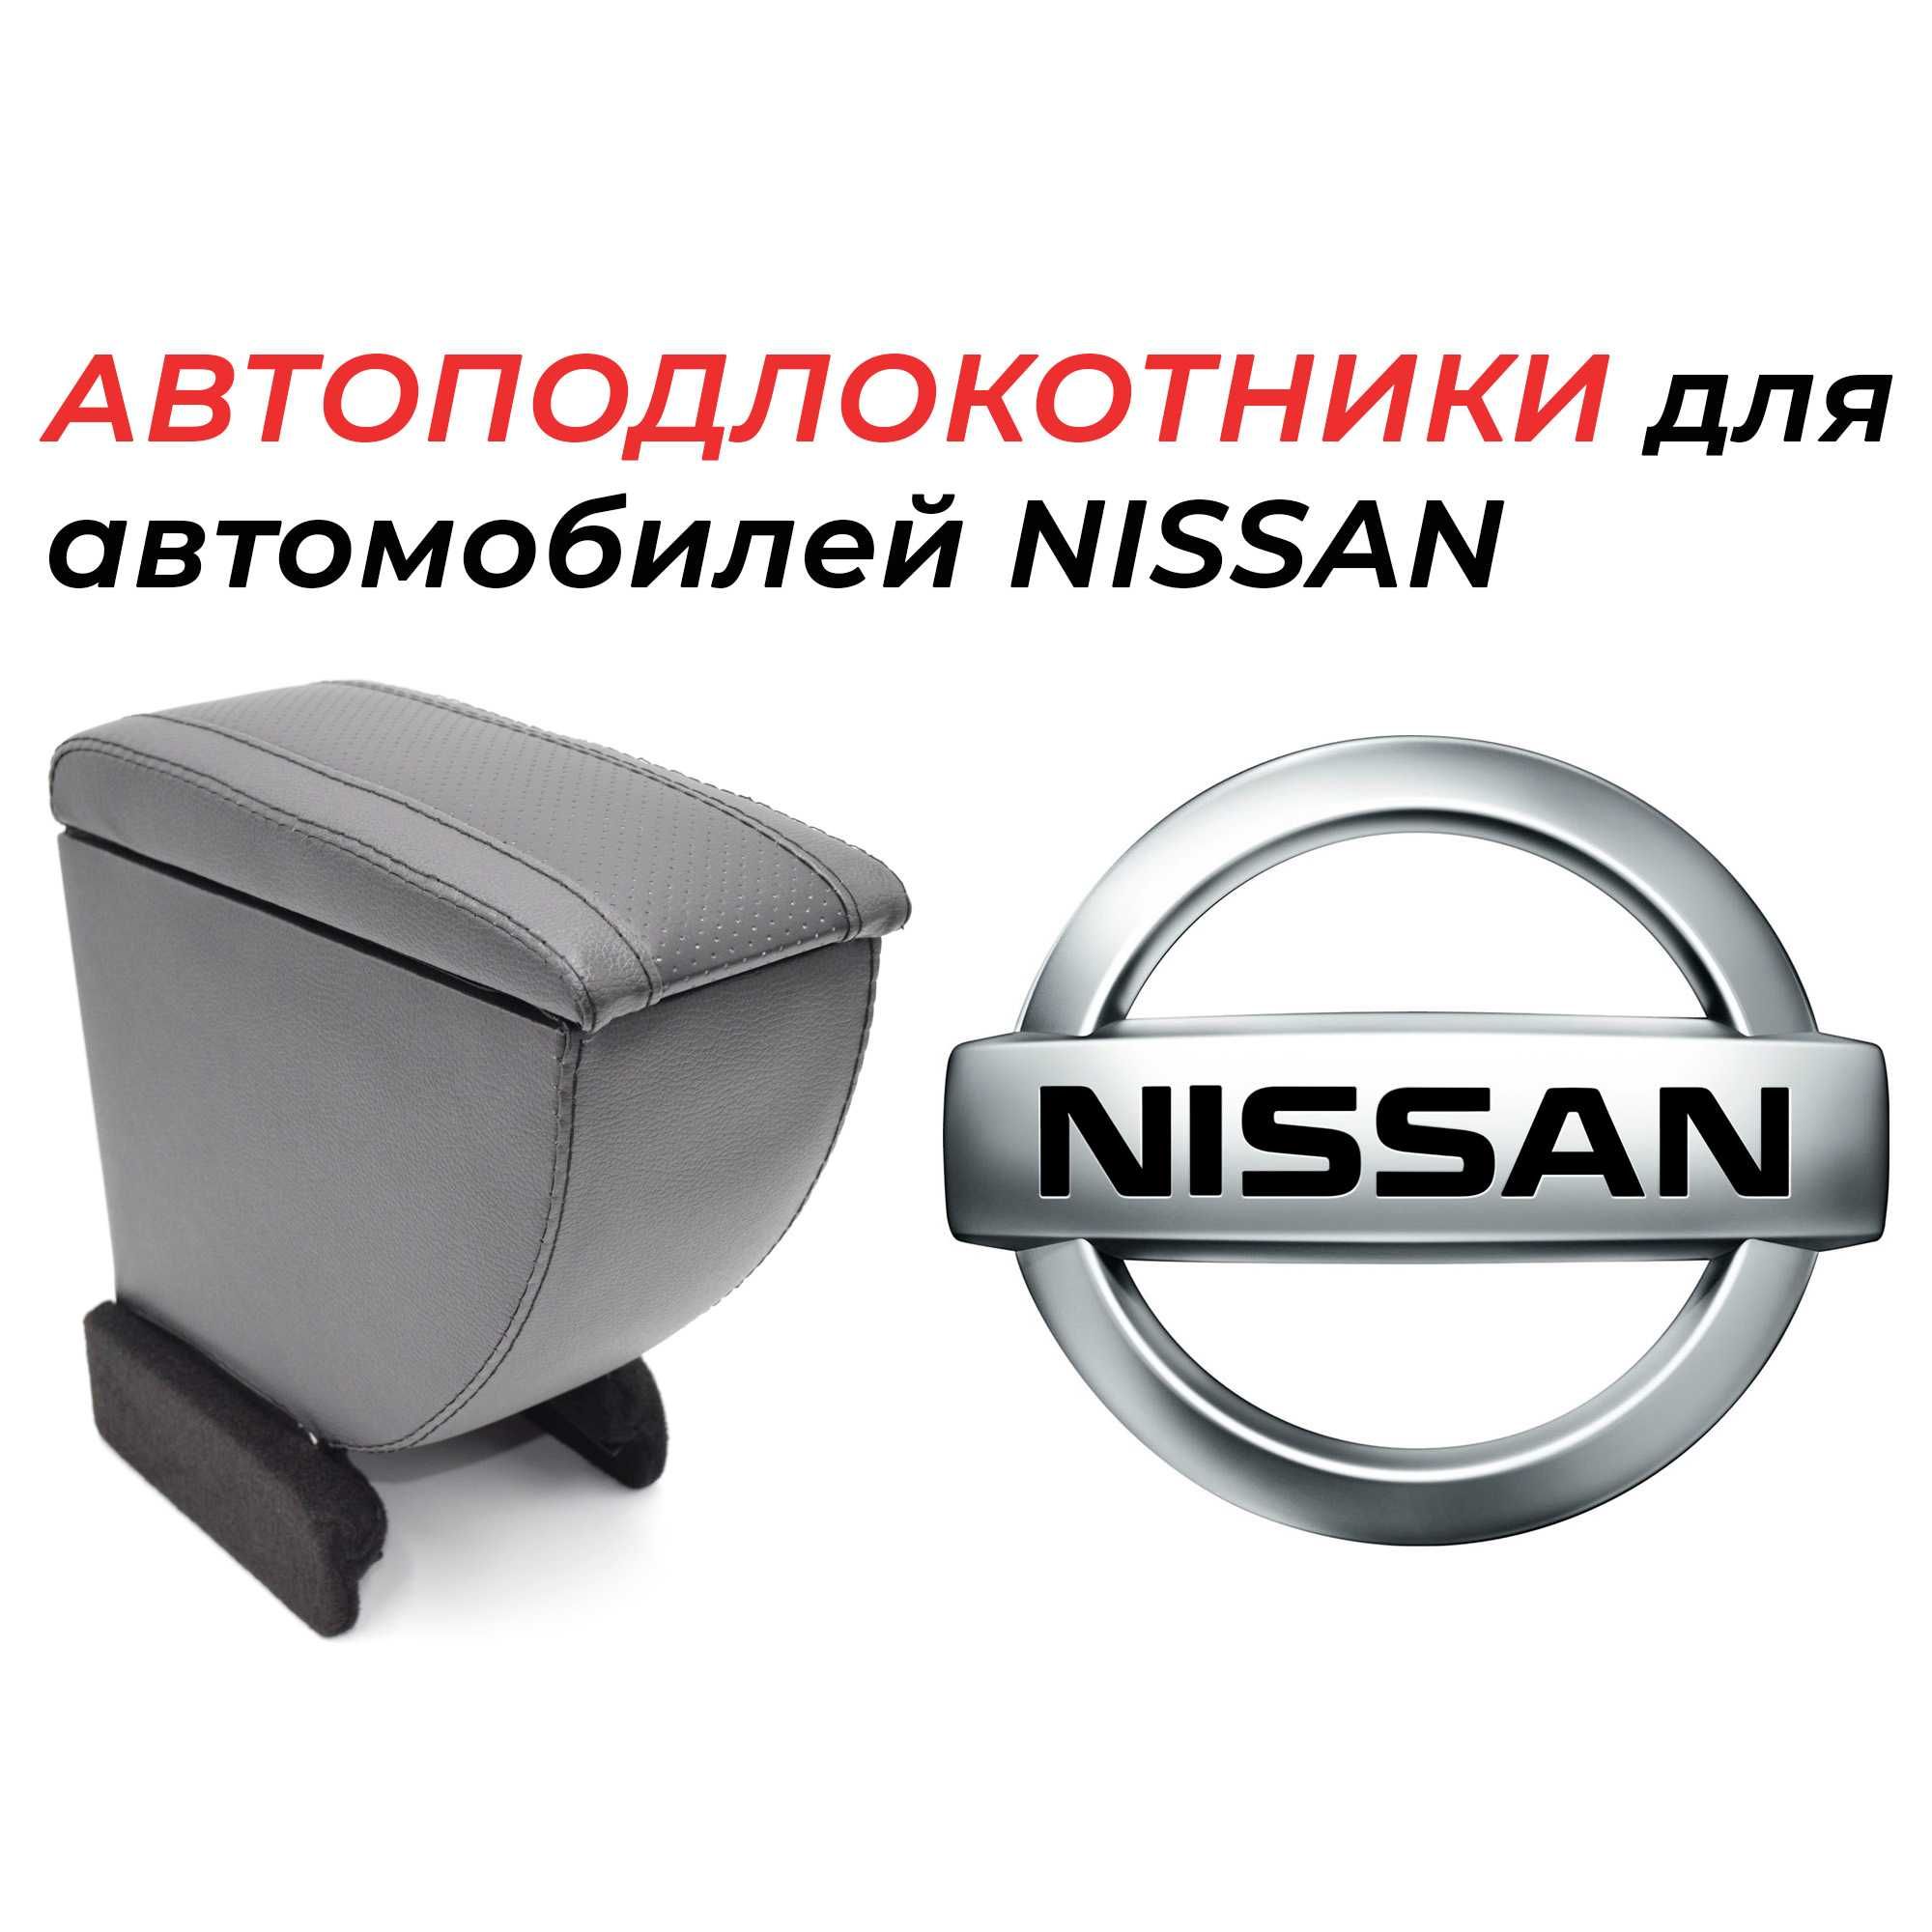 Подлокотники для автомобилей nissan производства России